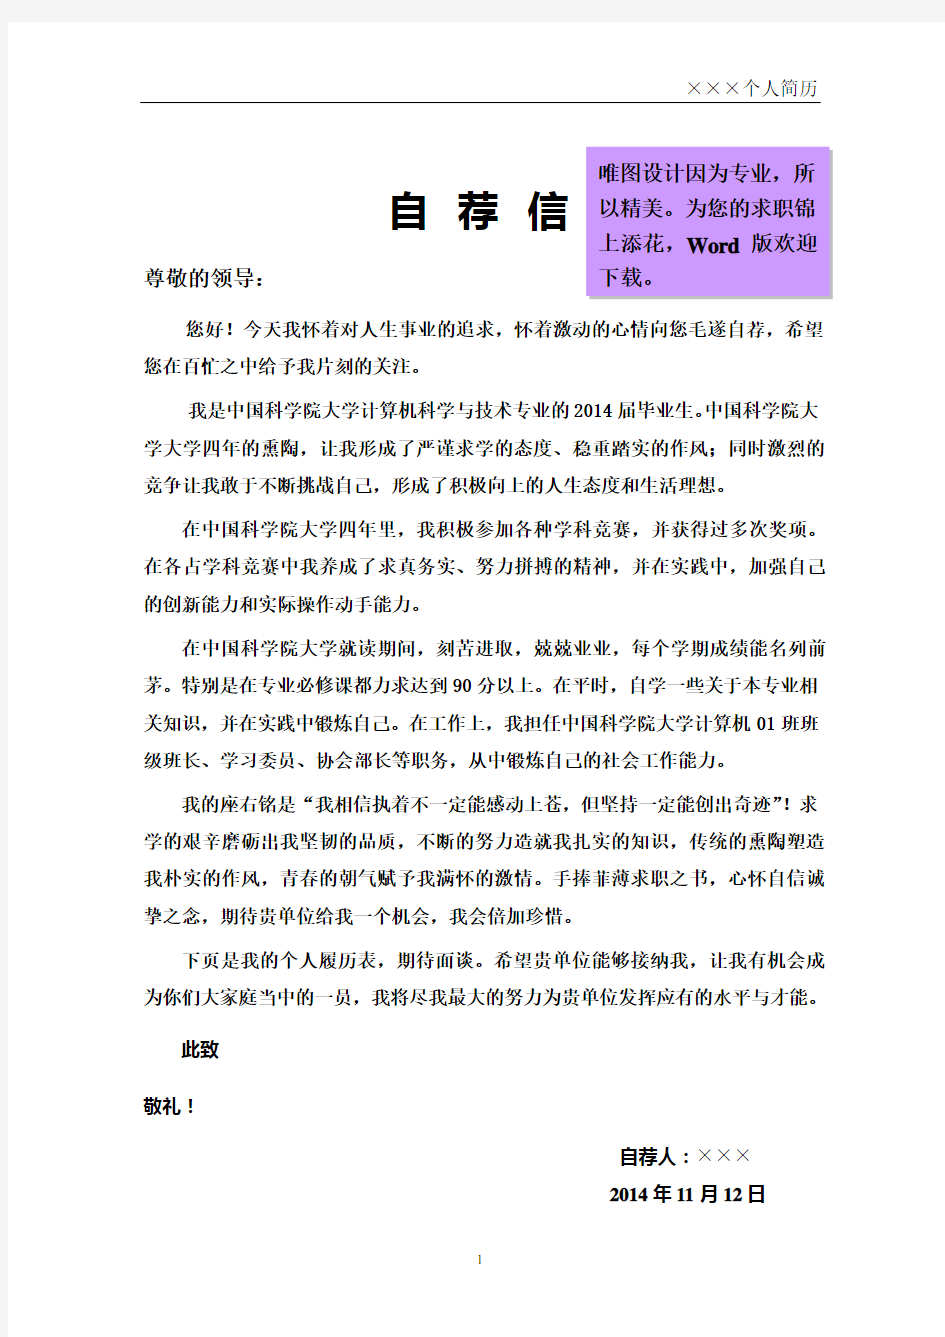 中国科学院大学封面个人简历模板